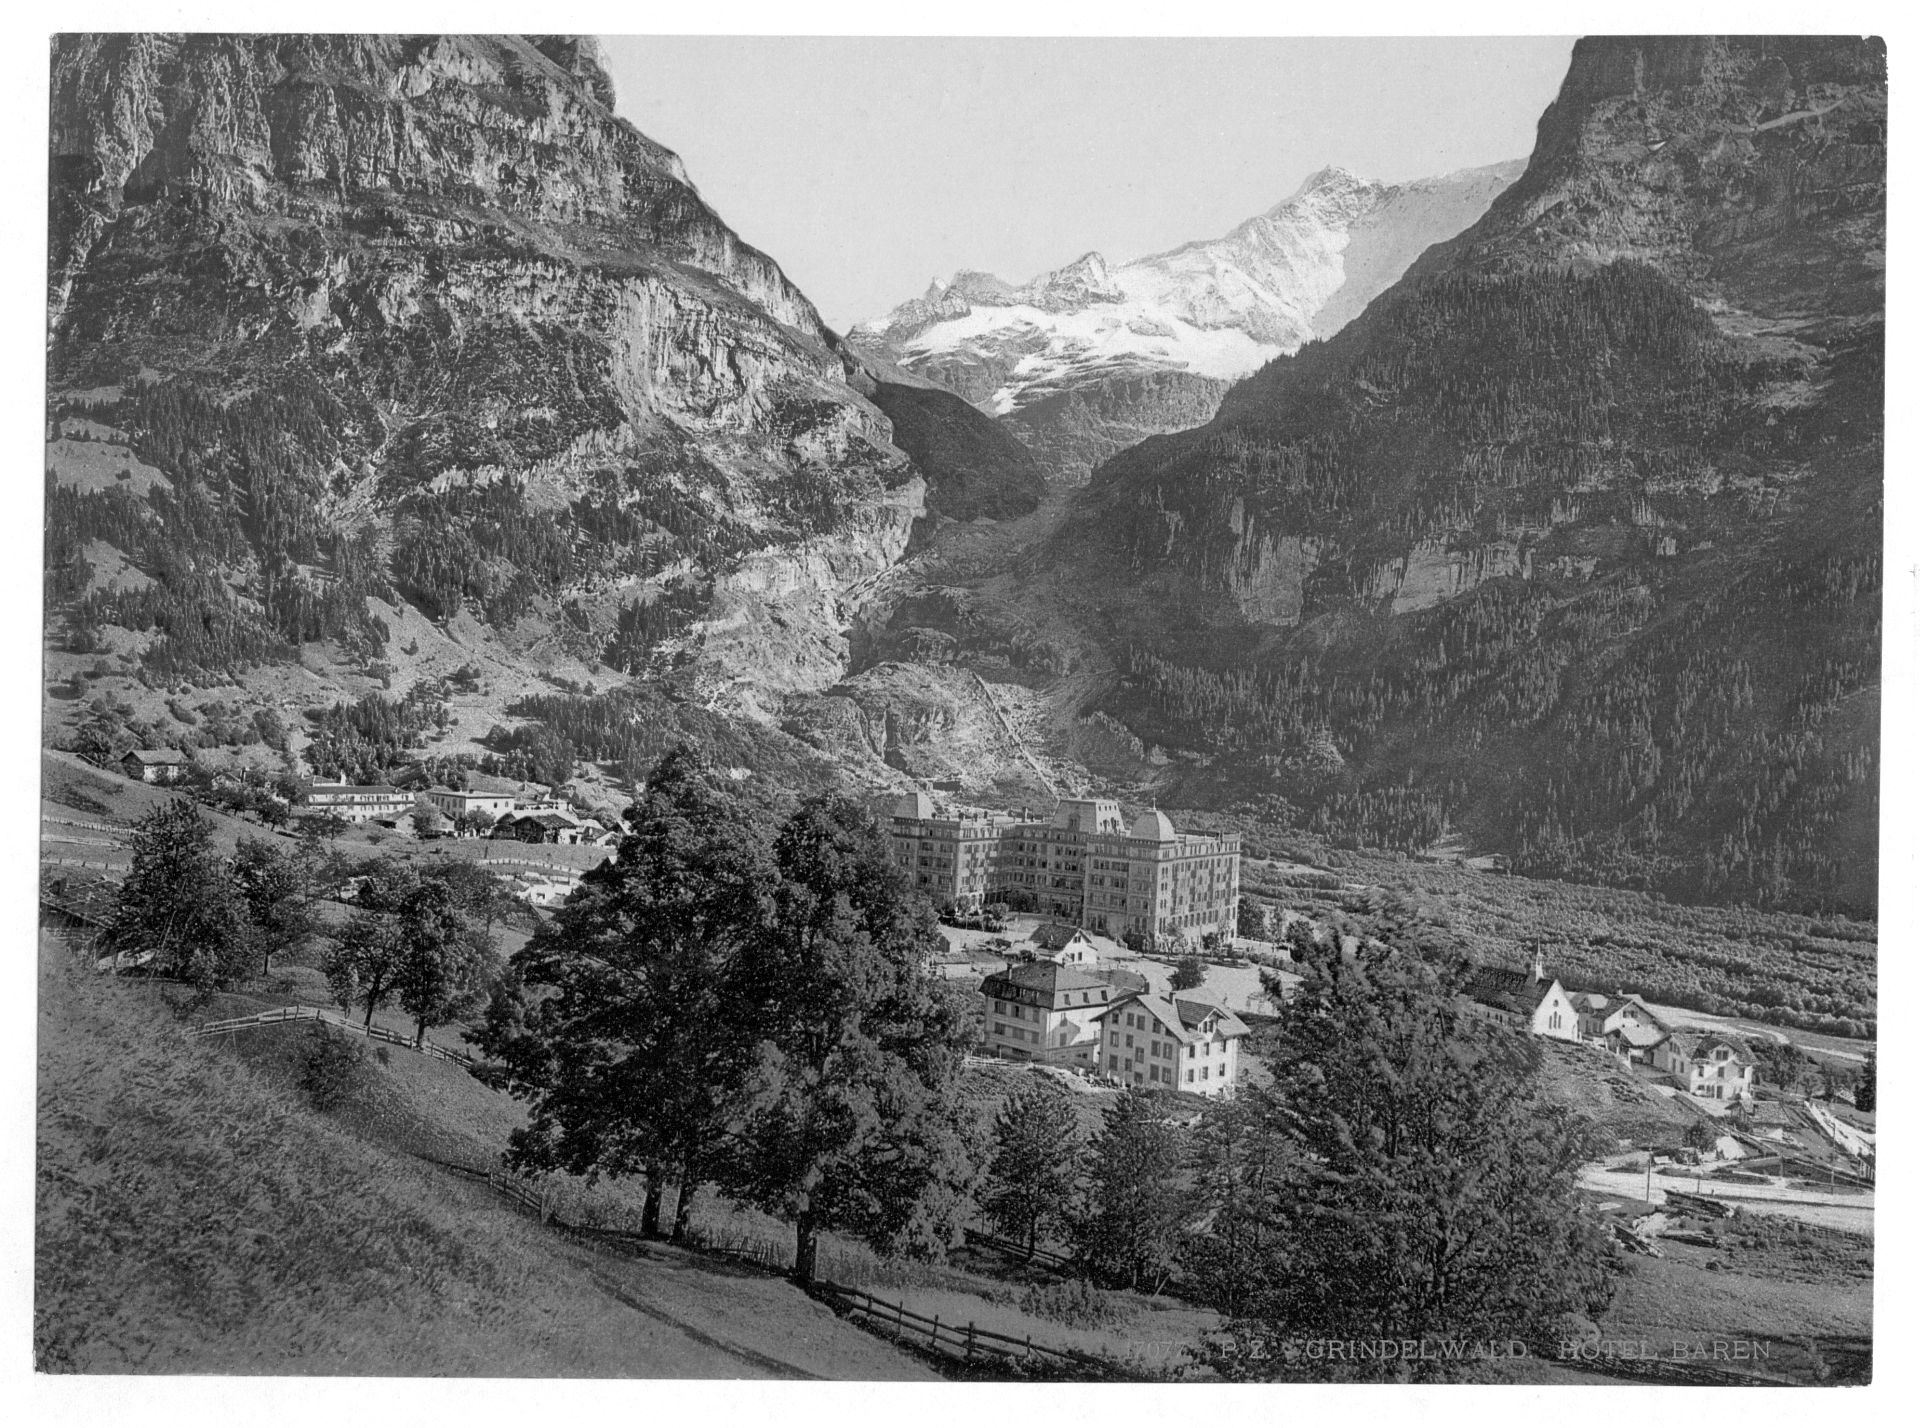 Grindelwald, Hotel Bären, Bernese Oberland, Switzerland